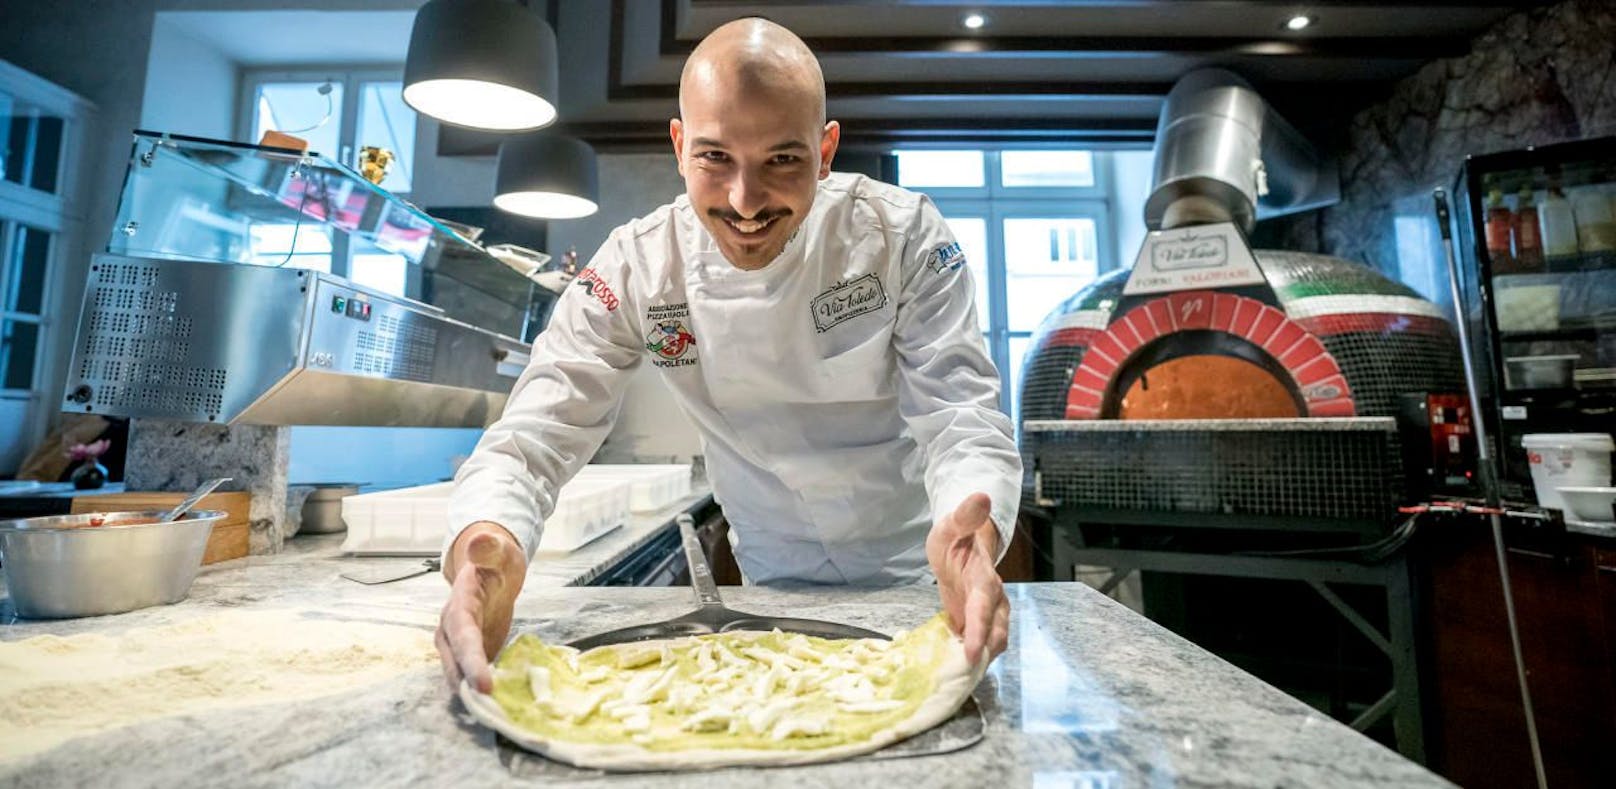 Im Jahr 2019 wurde Francesco Calò sogar zum Pizza-Weltmeister erklärt.